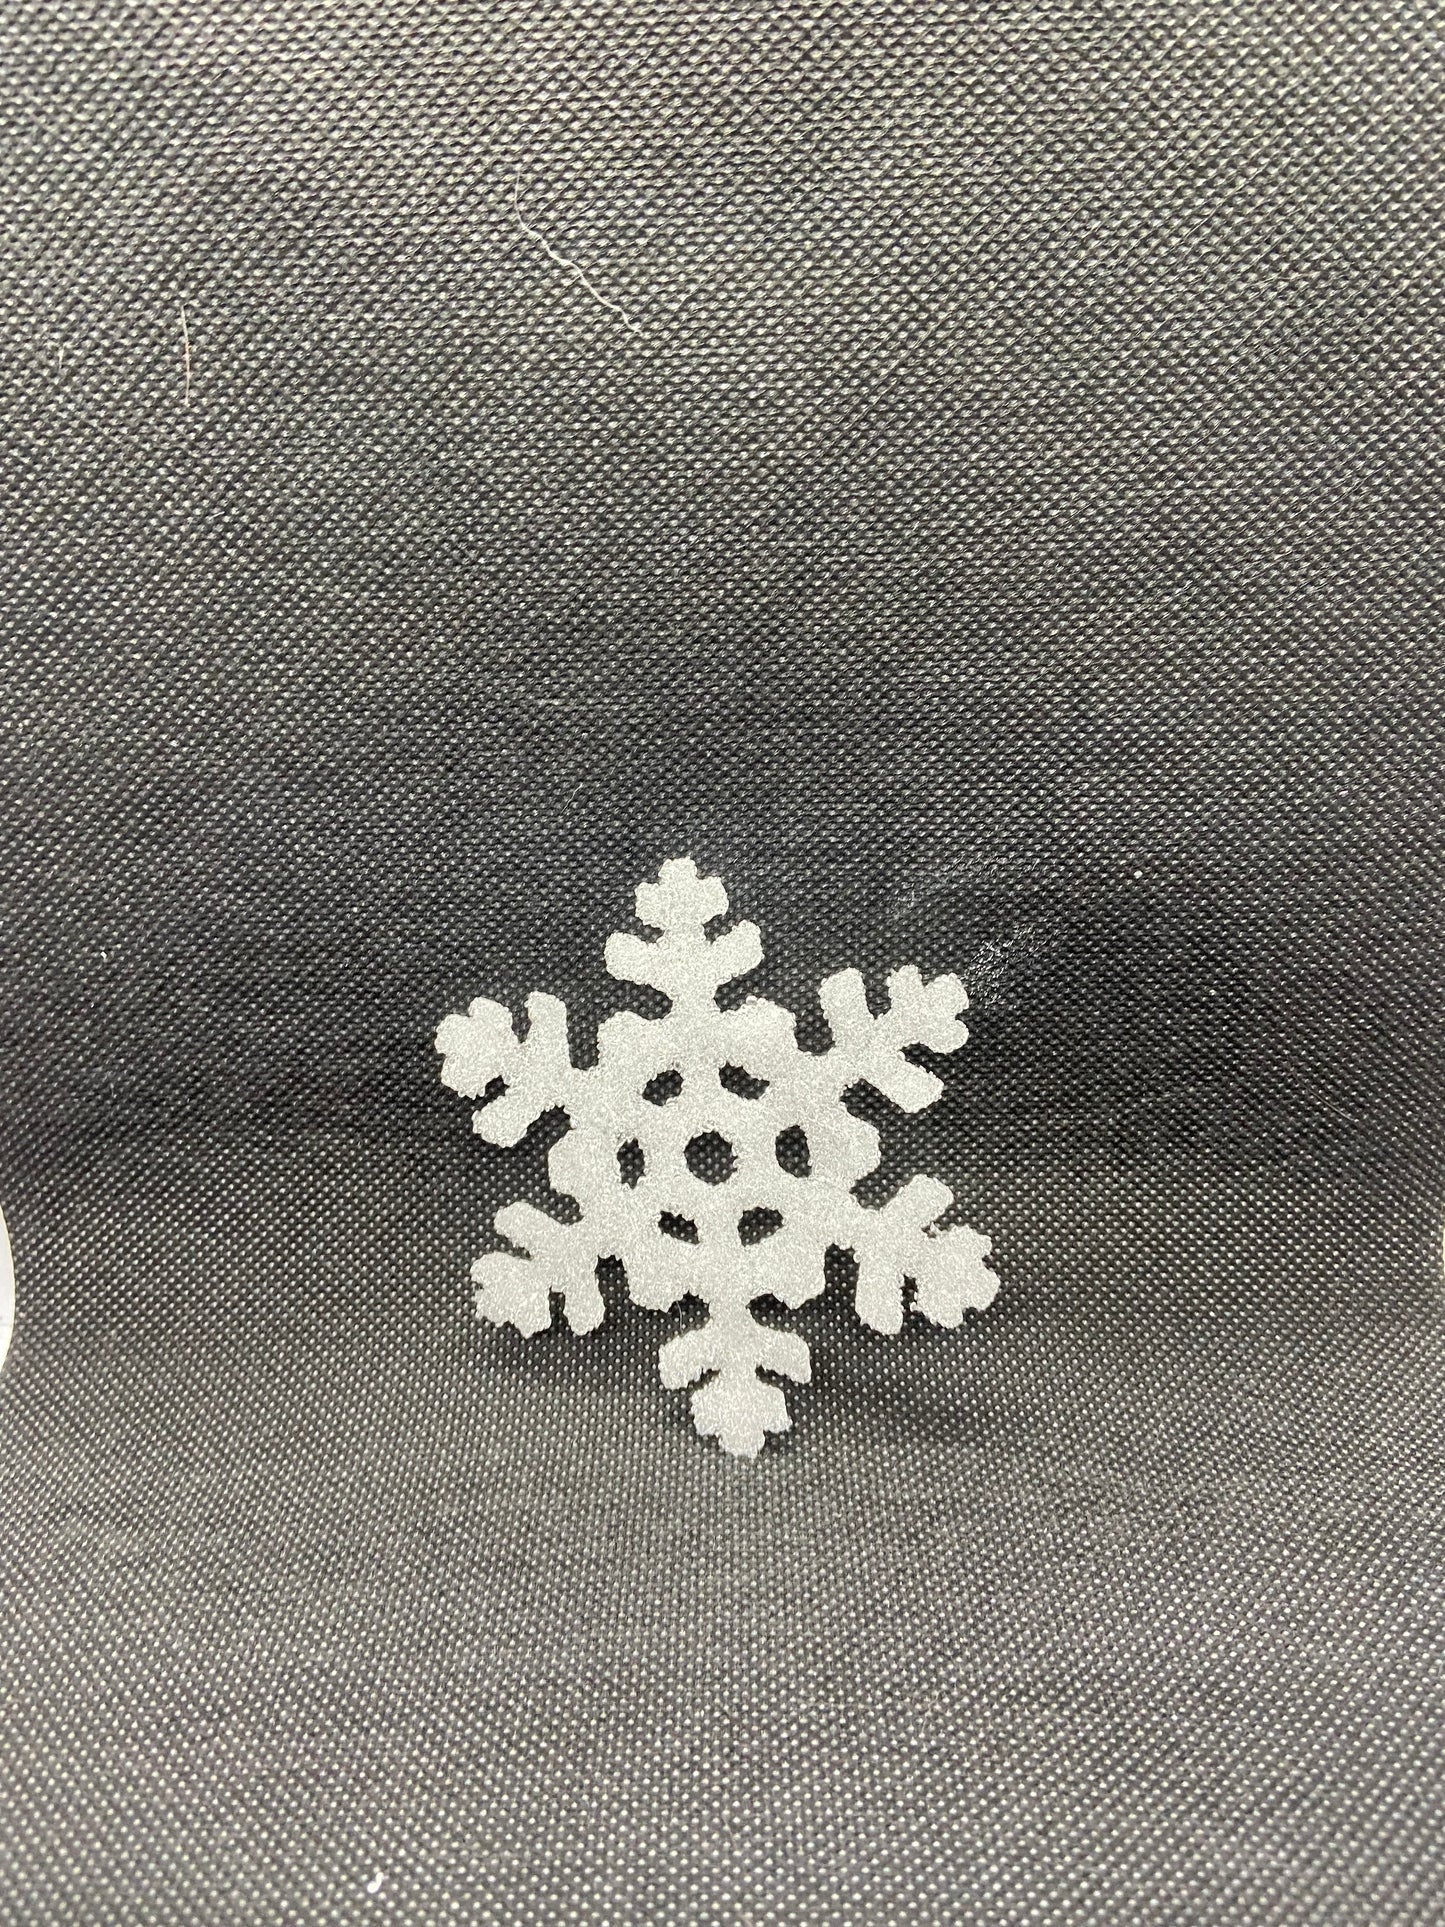 Small white snowflake